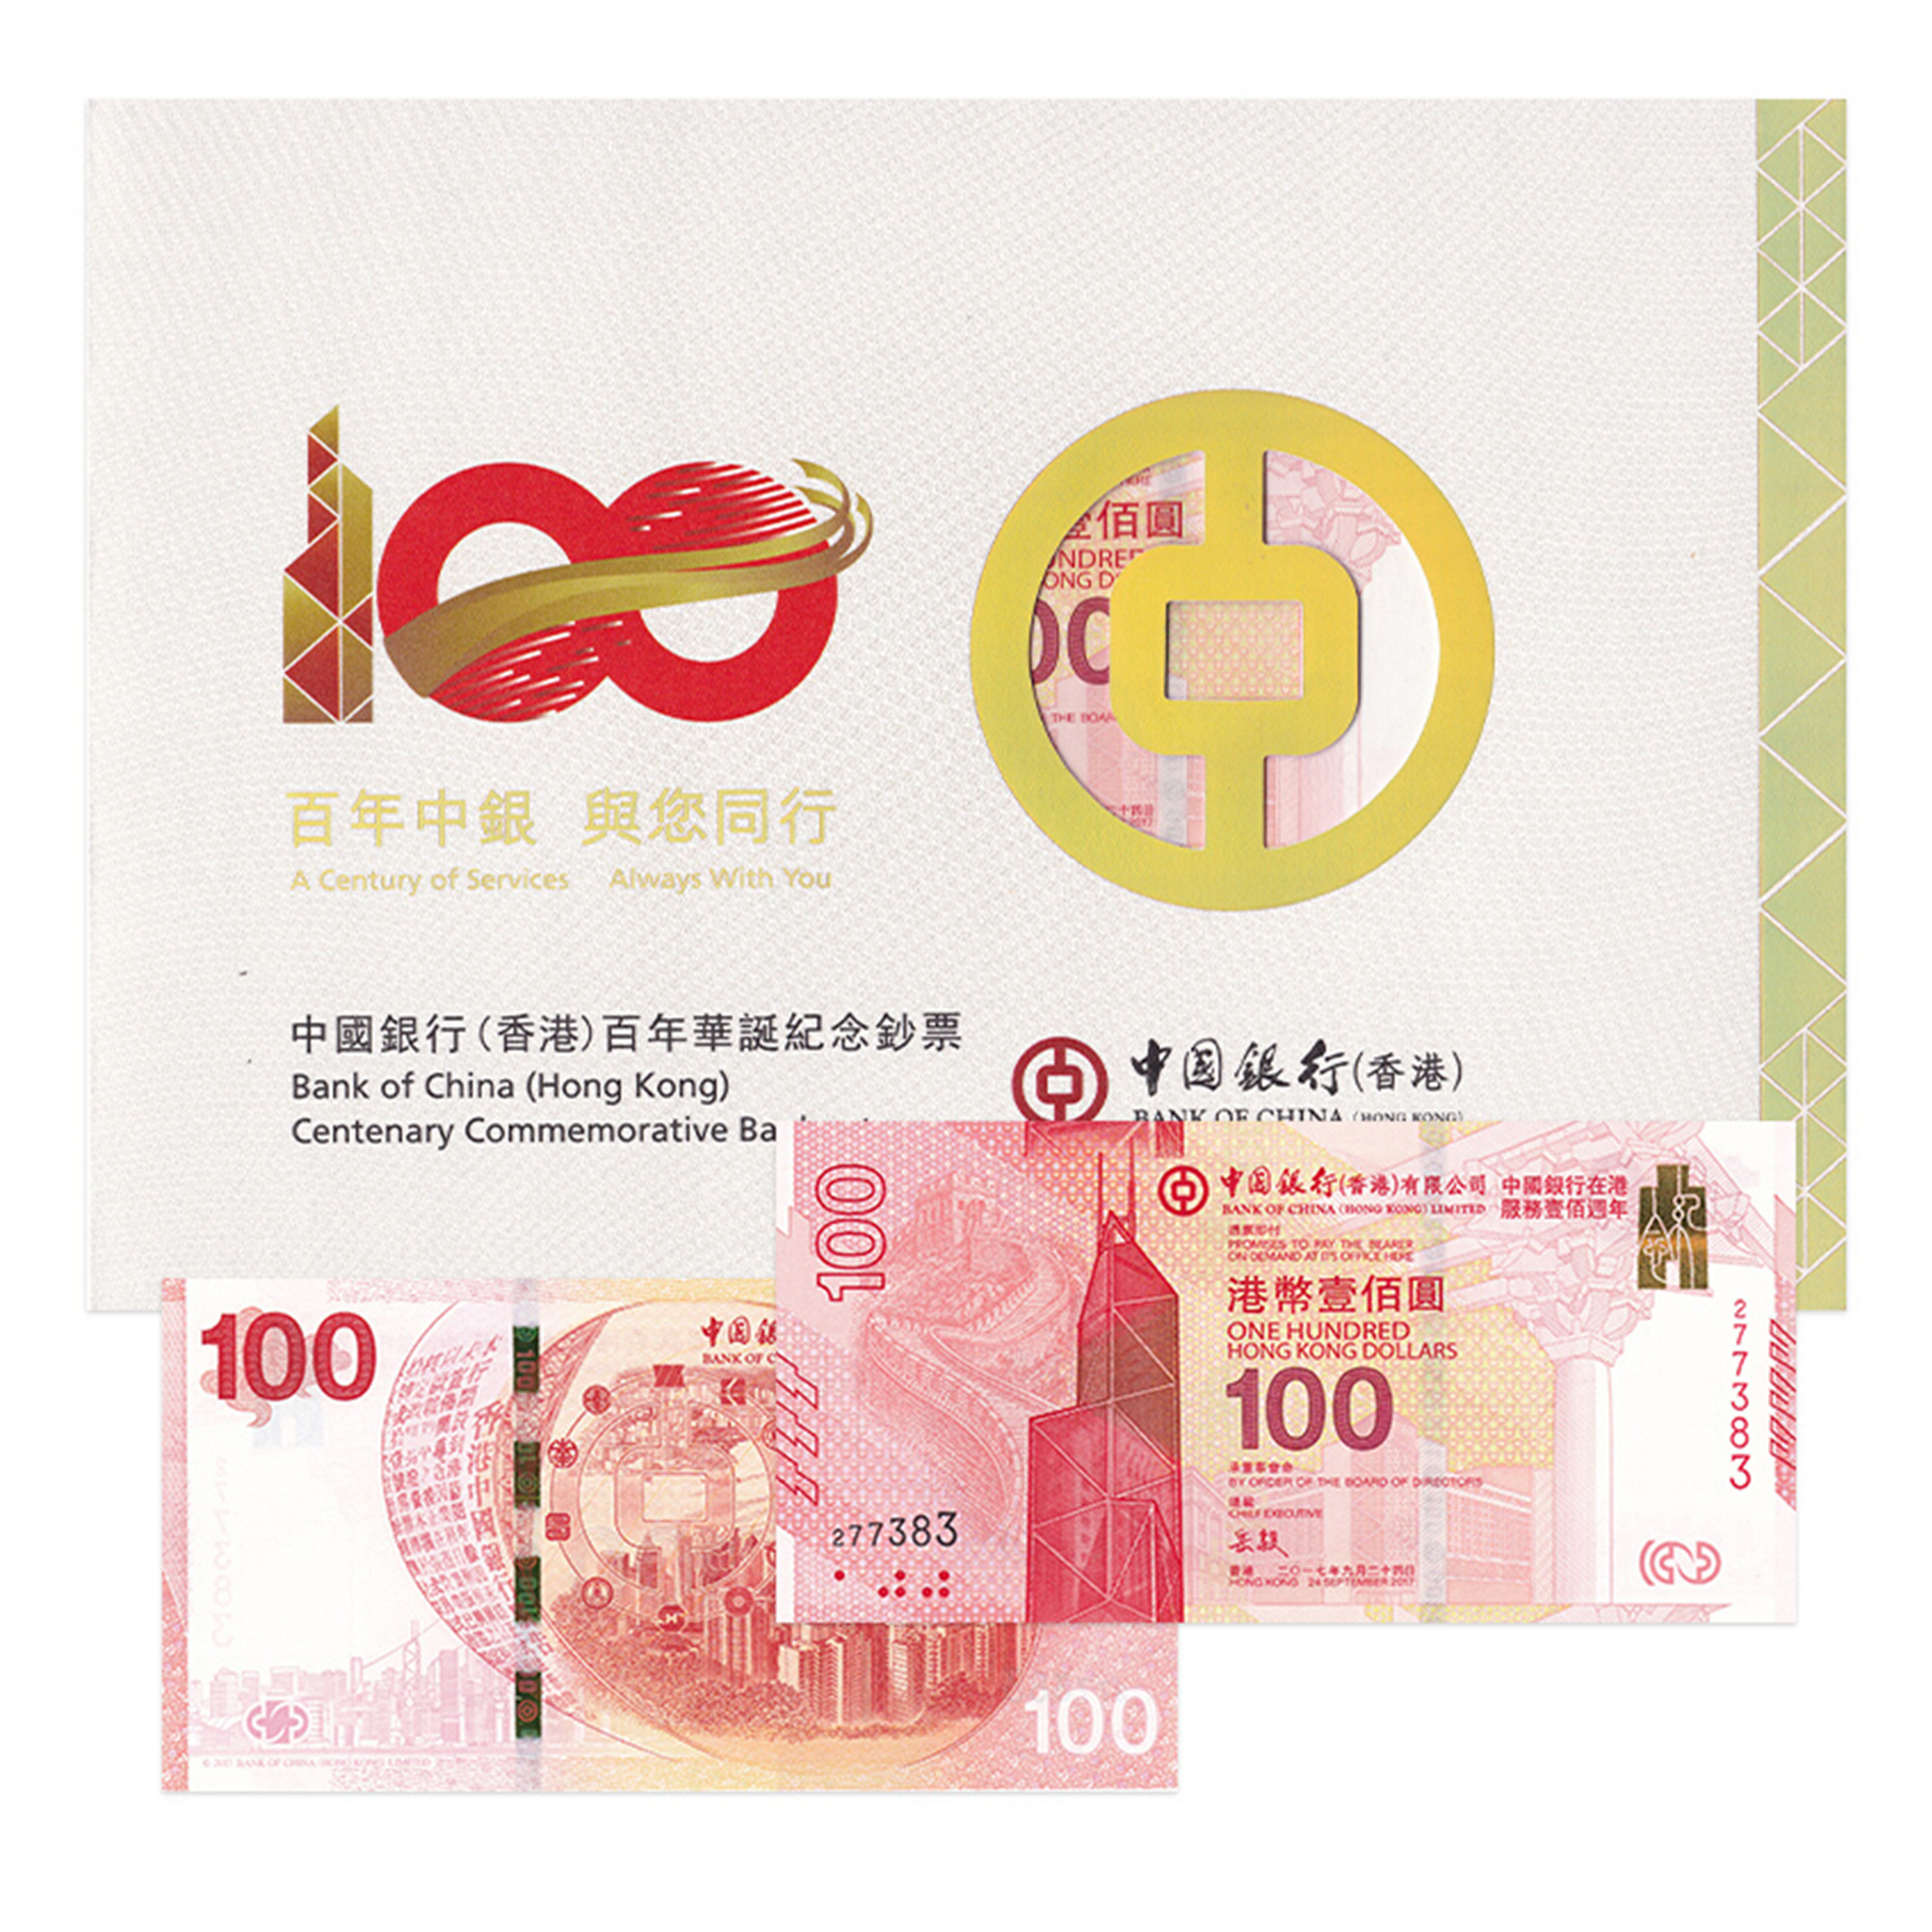 中国银行(香港)百年华诞纪念钞